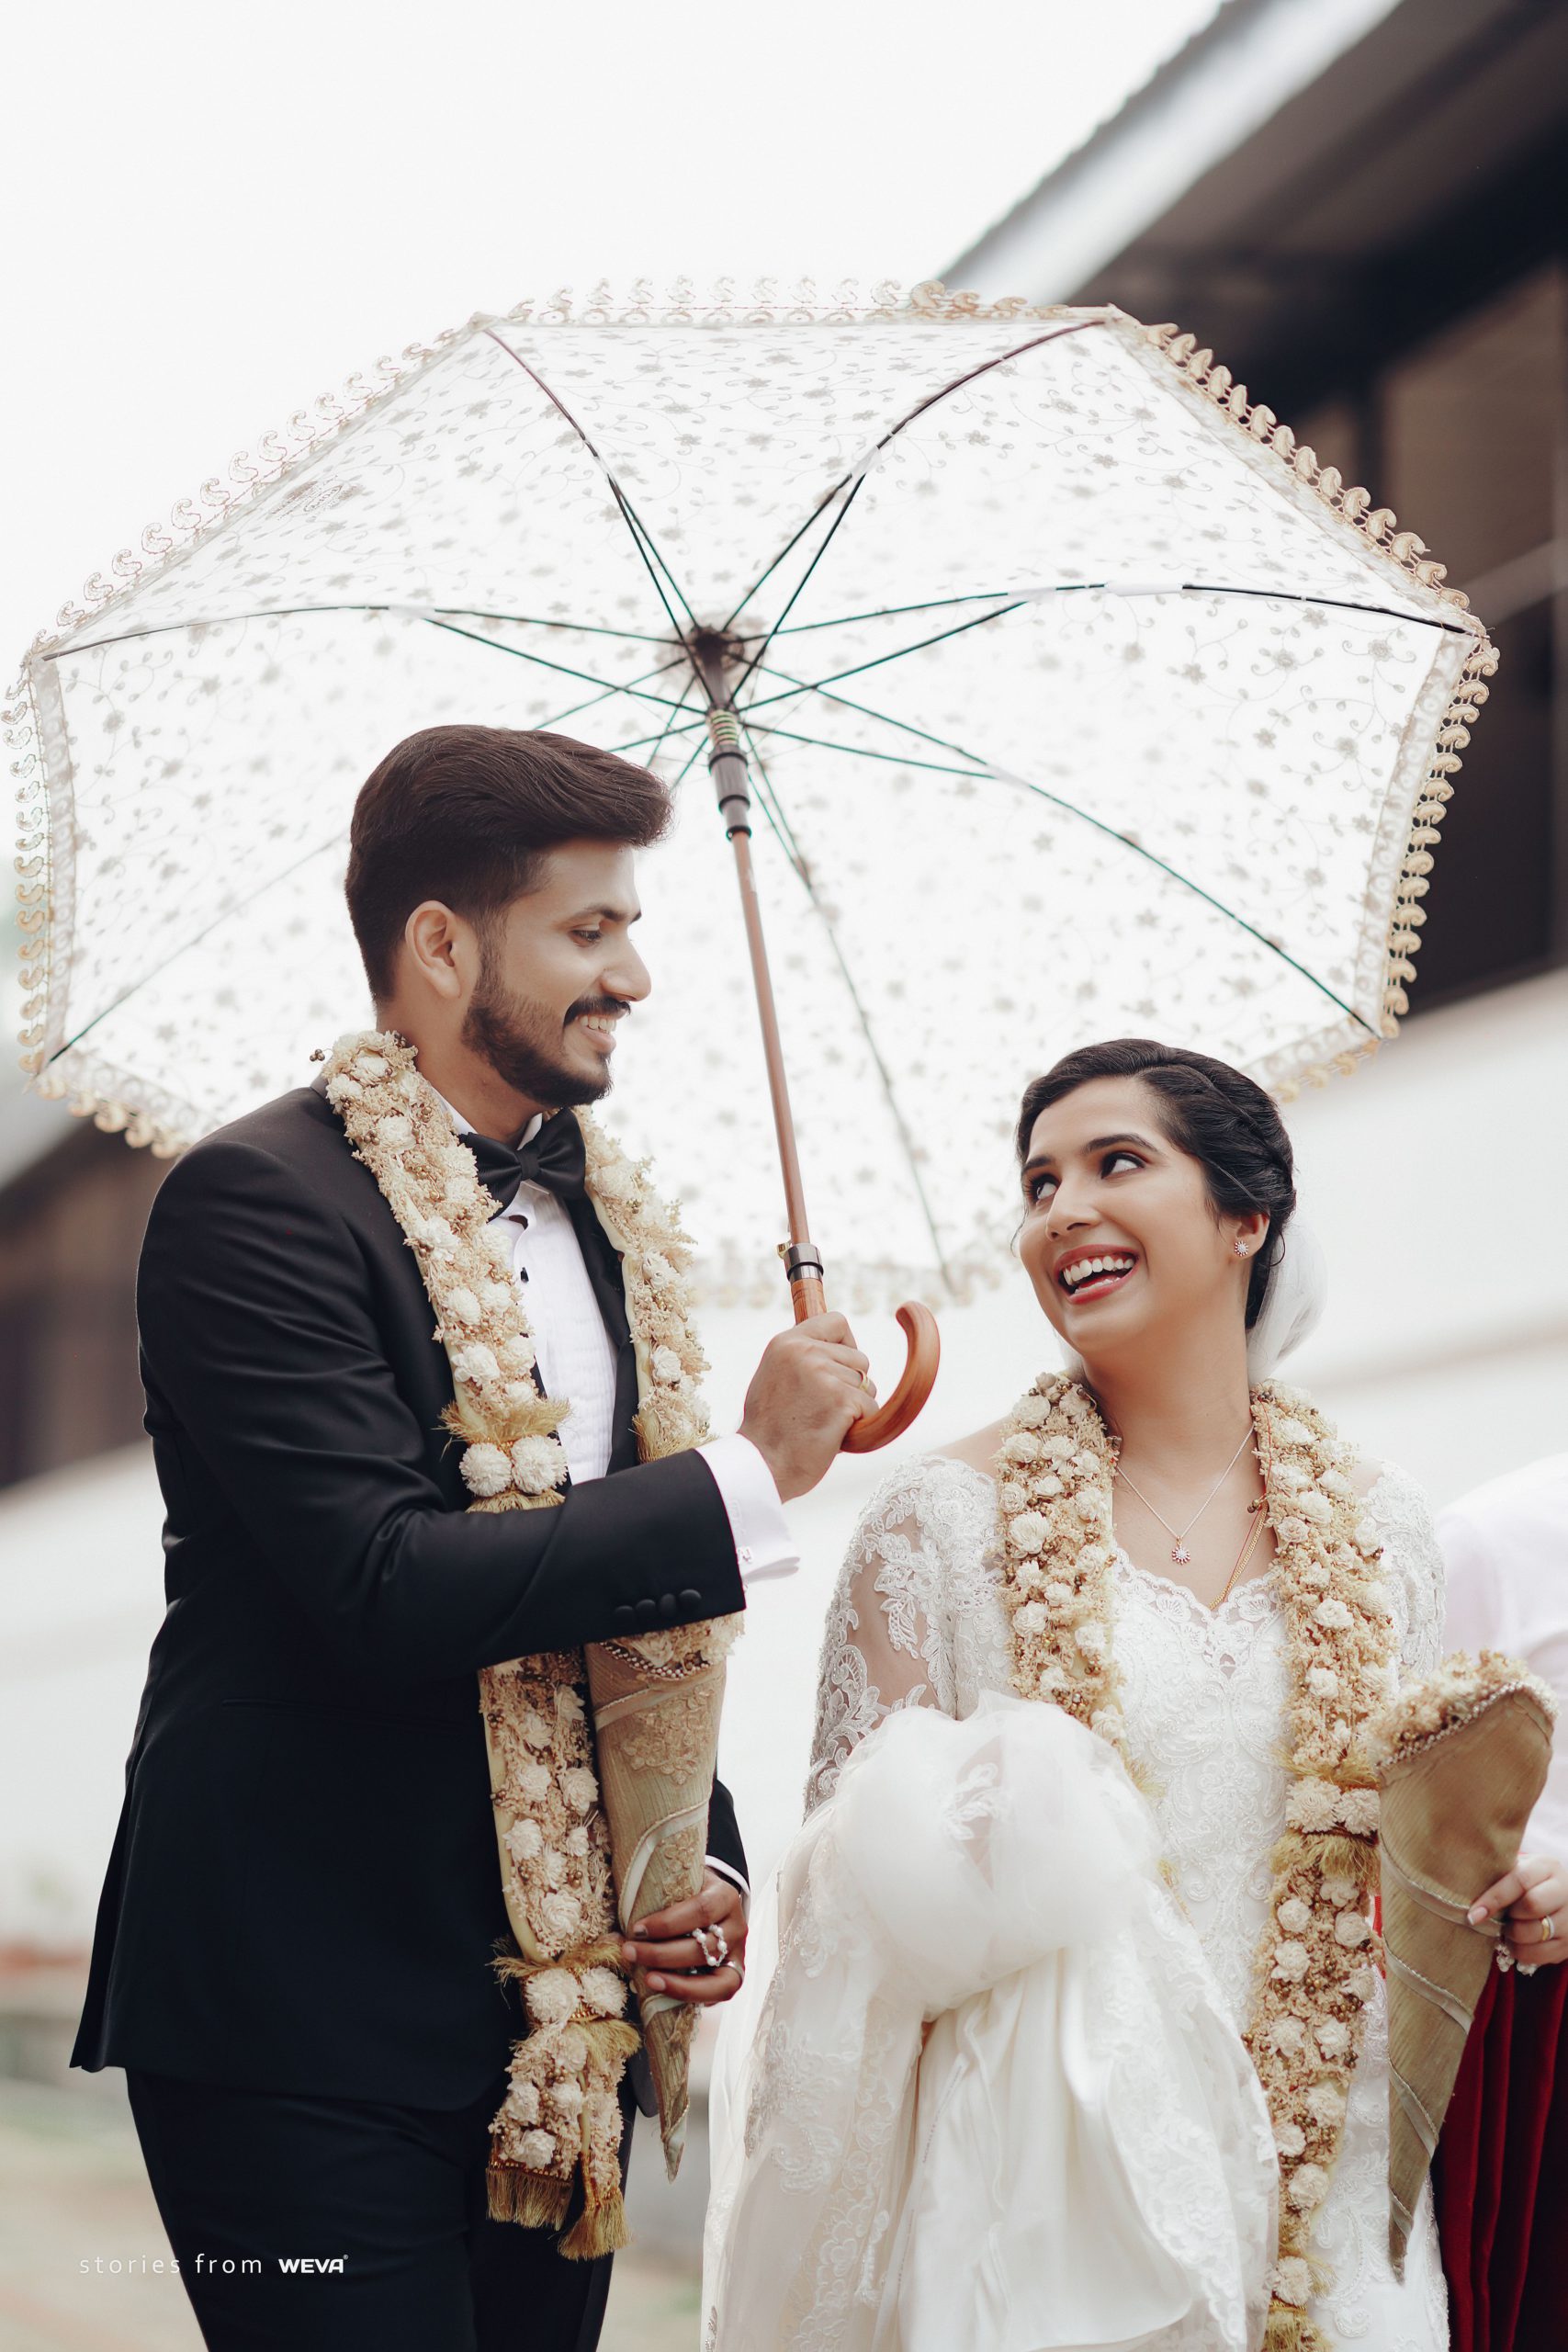 Don't they look so cute together? #weddingday #christianwedding  #happycouple #coupleshoot … | Kerala wedding photography, Wedding photos  poses, Wedding couple poses